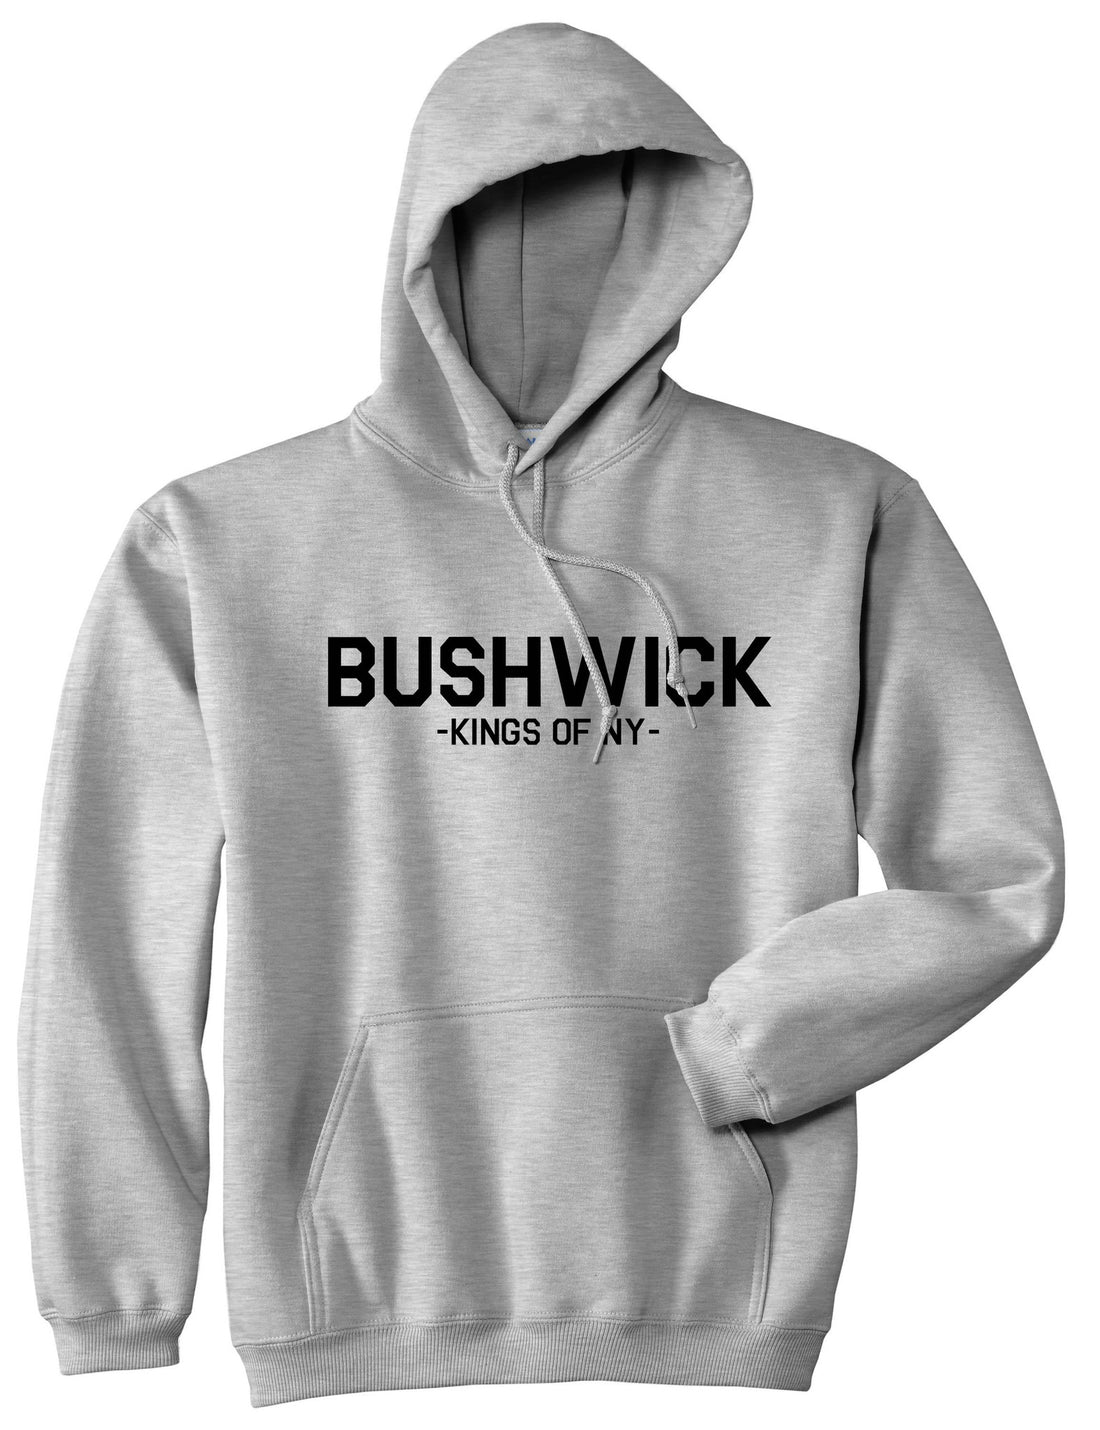 Bushwick Brooklyn New York Pullover Hoodie Hoody in Grey